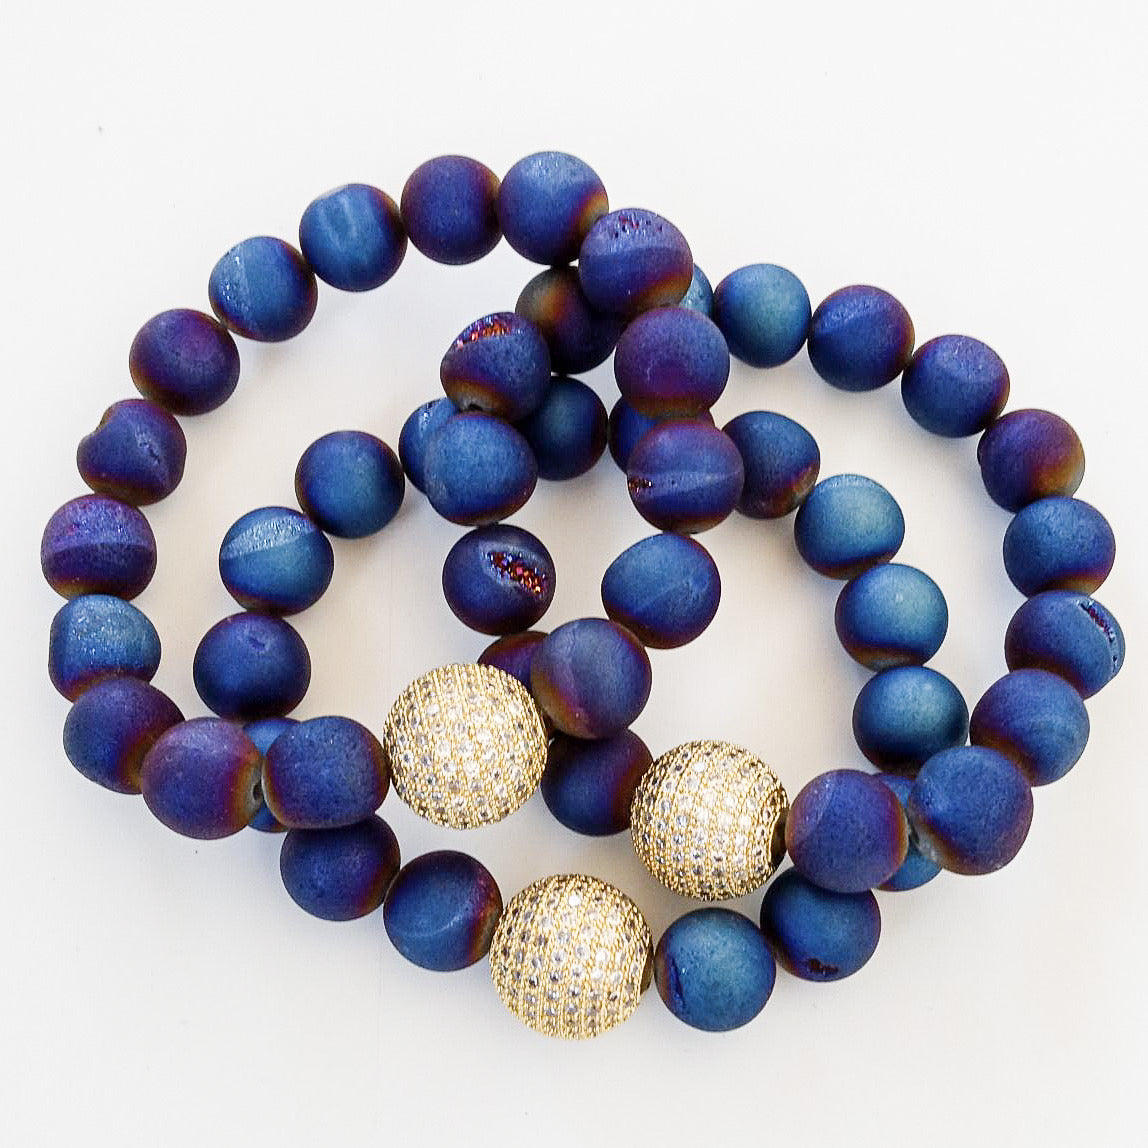 Gemstone Pave Ball Bracelets